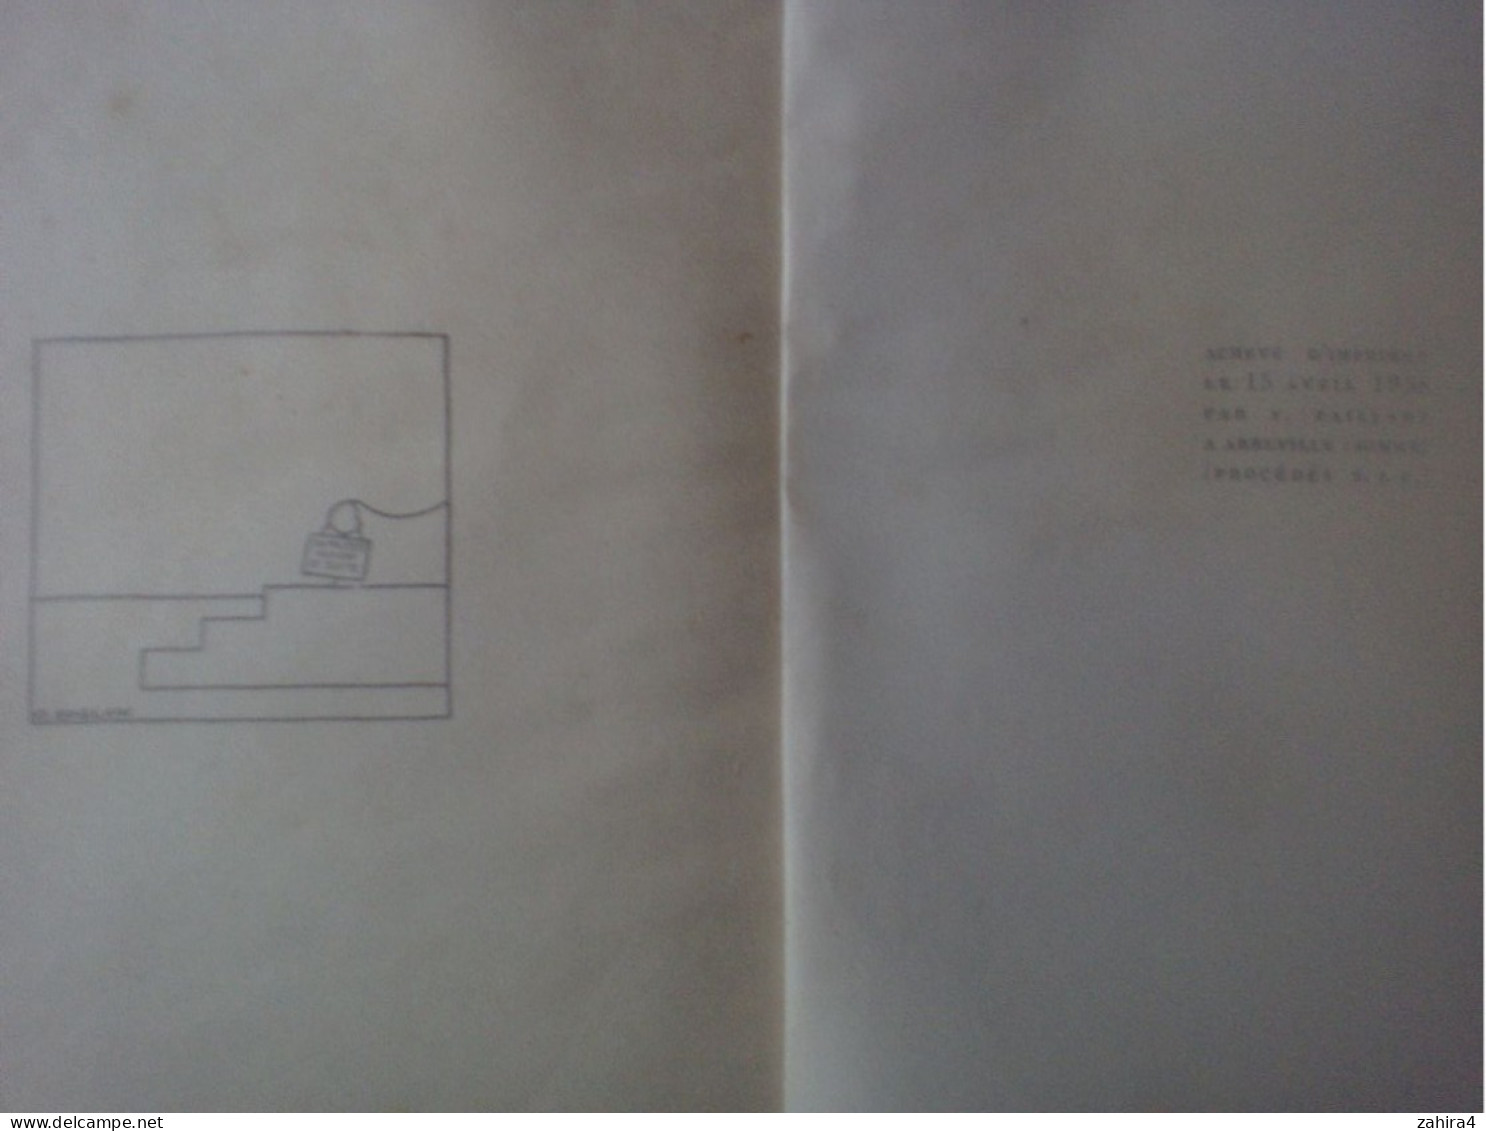 Style BD sans lecture Illustrateur - édition ancienne ? - Le petit roi par O. Soglow - NRF Gallimard Paris - 4e édition